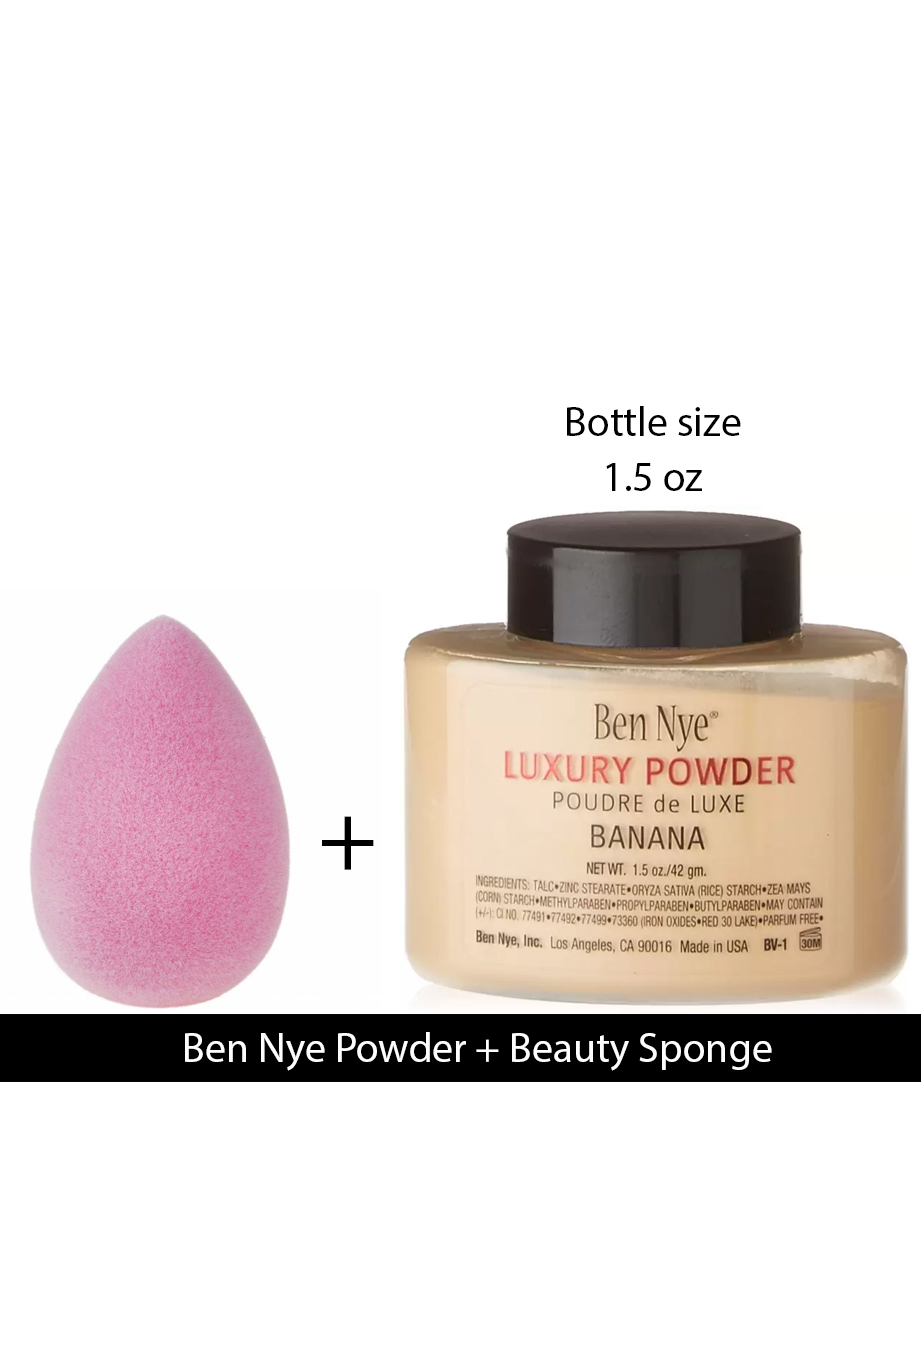 Ben Nye Banana Luxury Powder BV-1 1.5oz